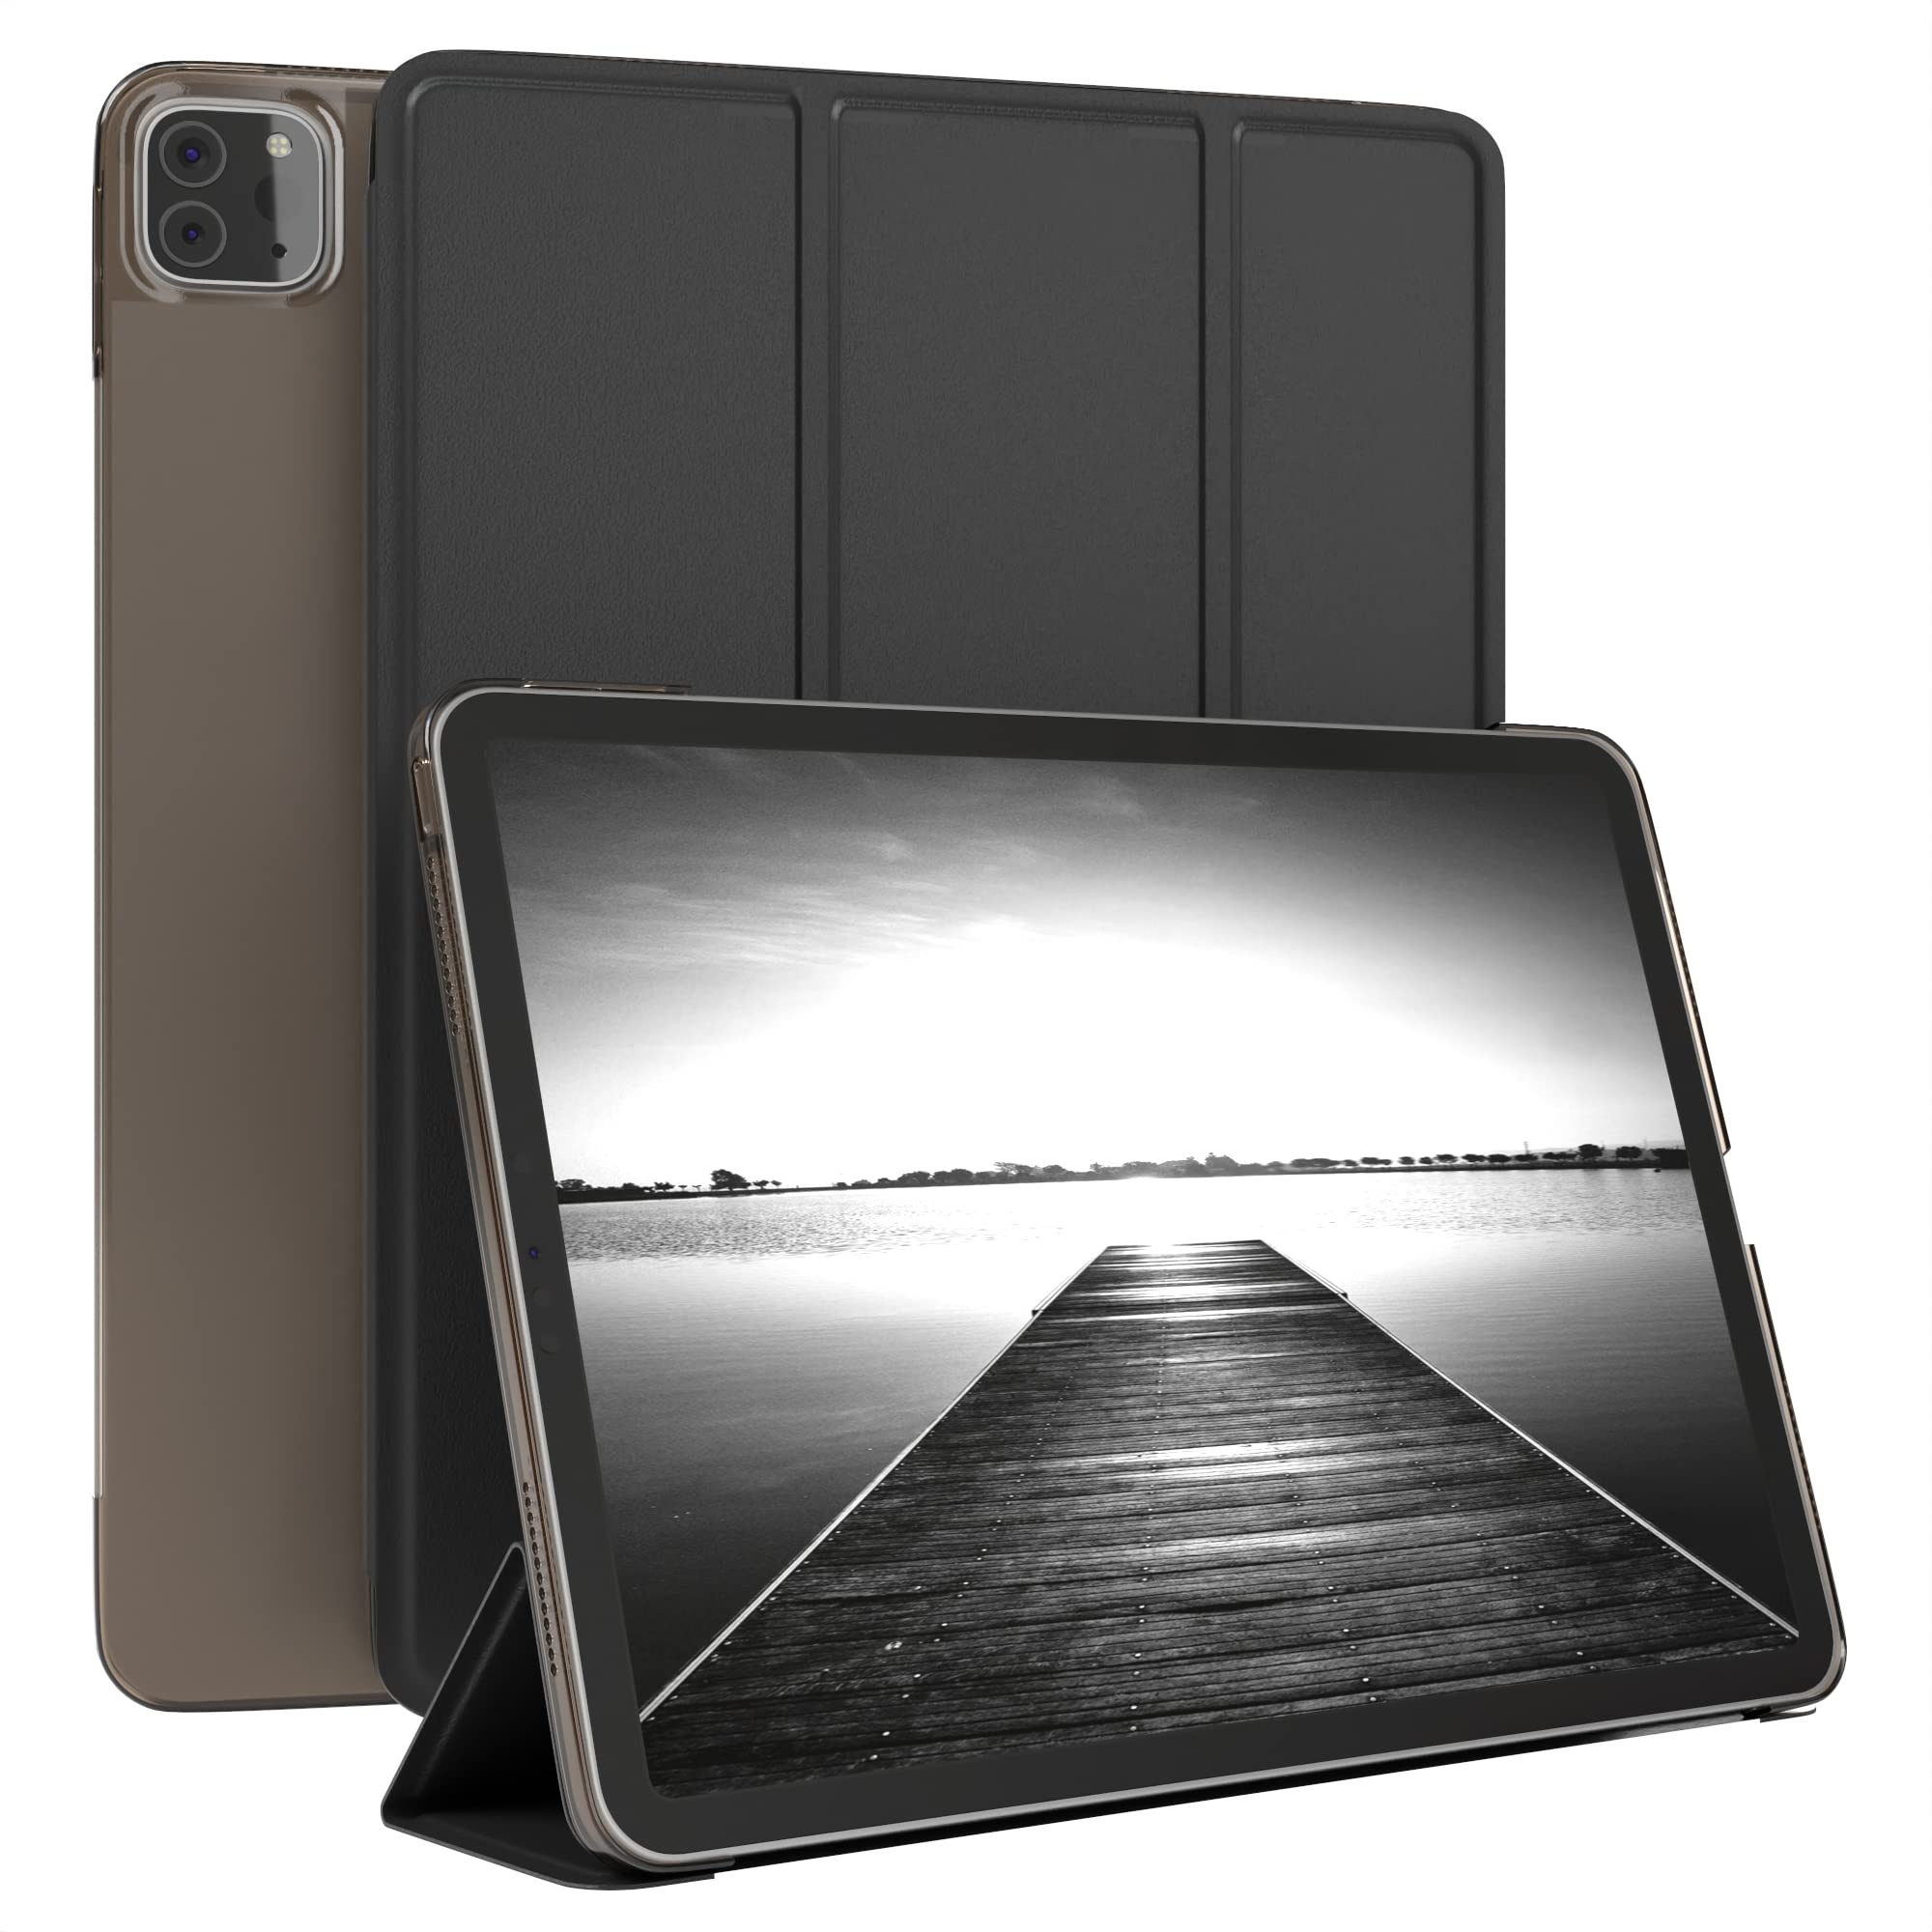 EAZY CASE Smartcase Tablet Hülle kompatibel mit iPad Pro 11 (2021) mit Standfunktion, Schutzhülle mit Sleep und Wake Funktion, Tablet Case, Tablet Klapphülle aus Kunstleder, Schwarz